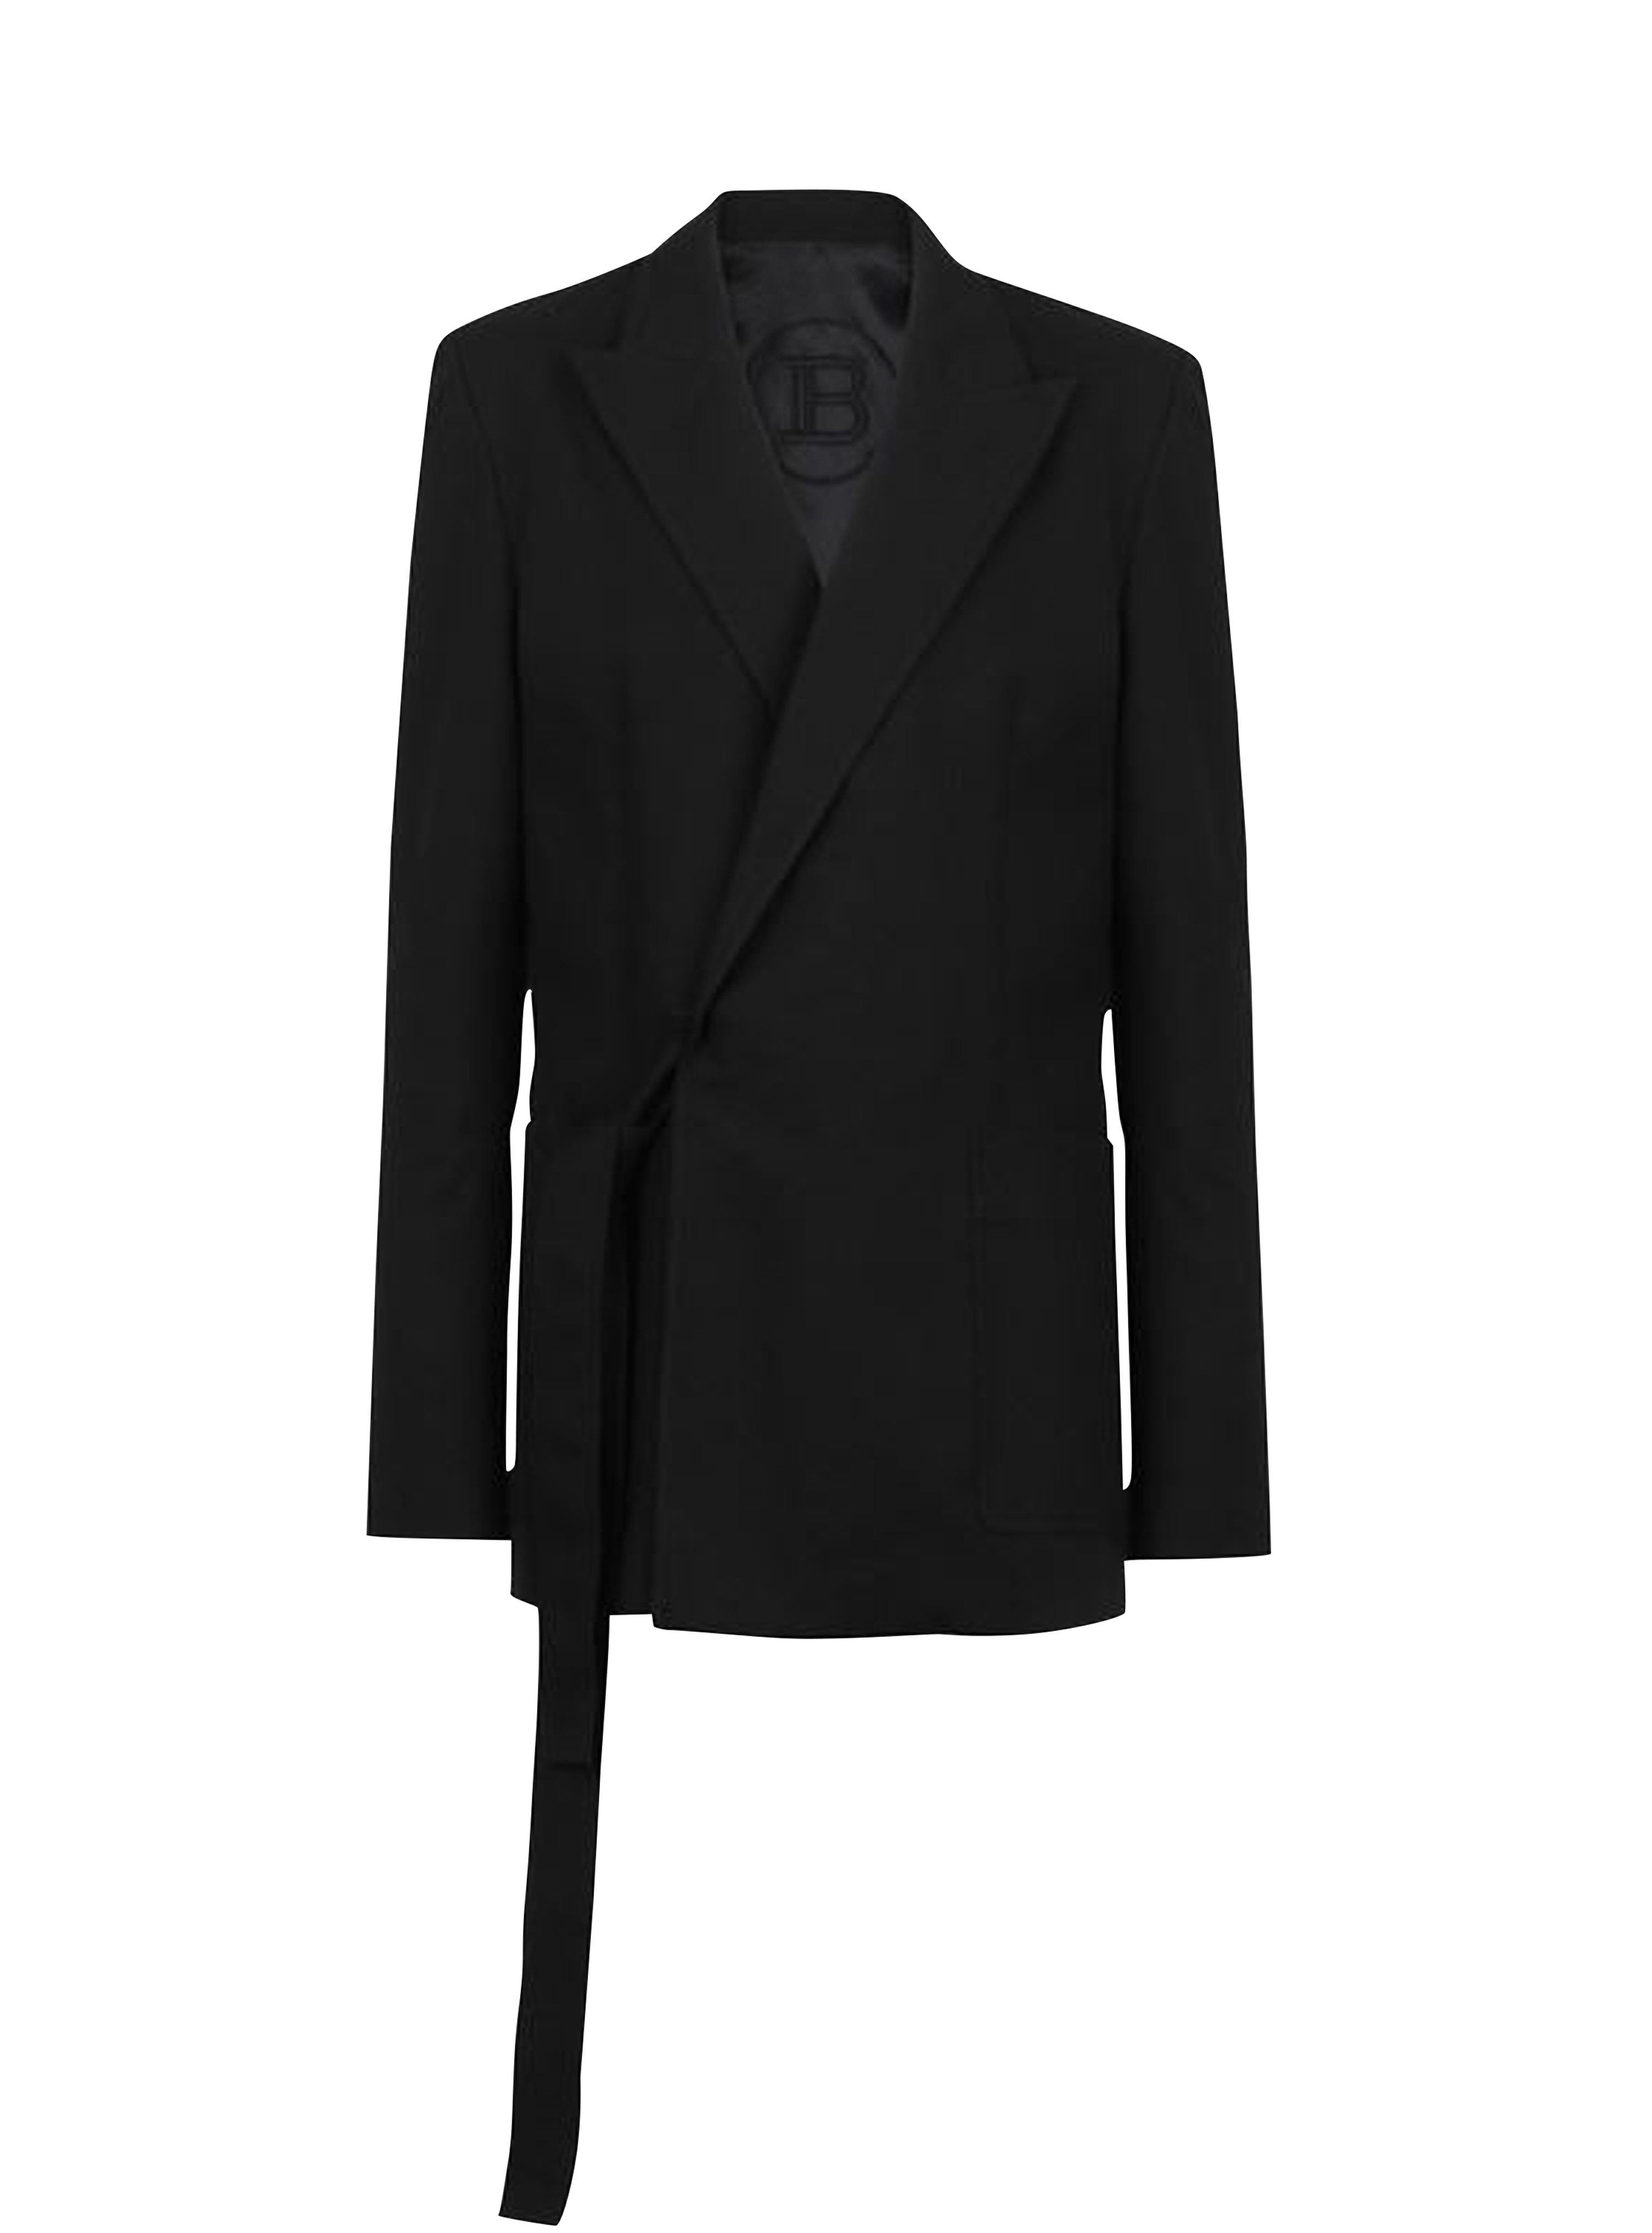 Asymmetrical cotton blazer, black